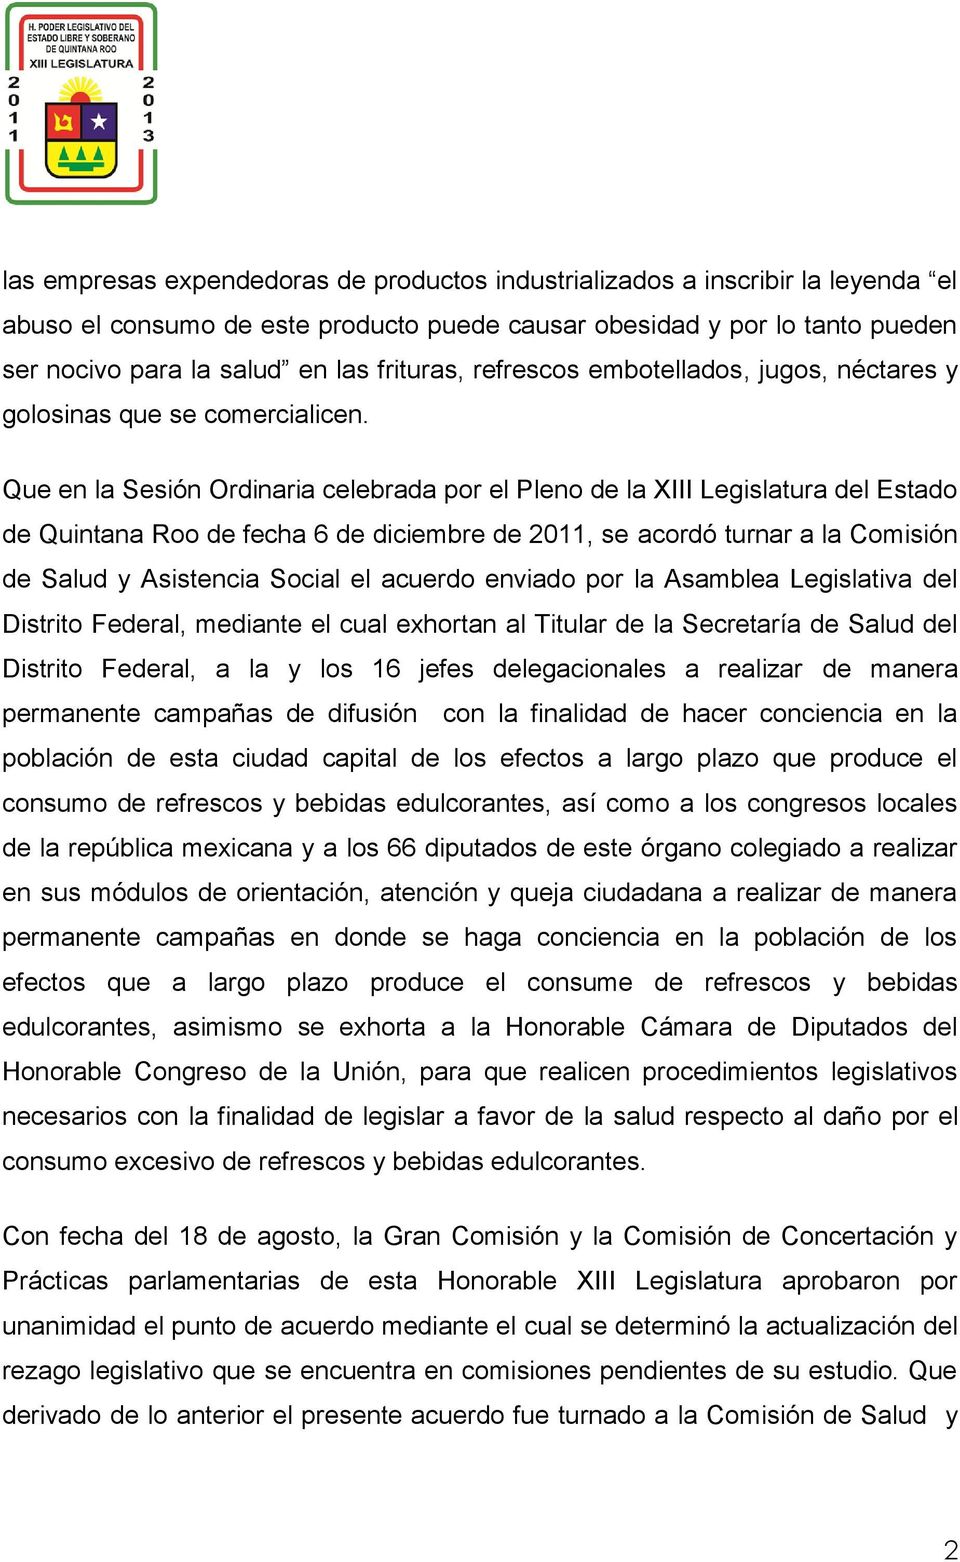 Que en la Sesión Ordinaria celebrada por el Pleno de la XIII Legislatura del Estado de Quintana Roo de fecha 6 de diciembre de 2011, se acordó turnar a la Comisión de Salud y Asistencia Social el